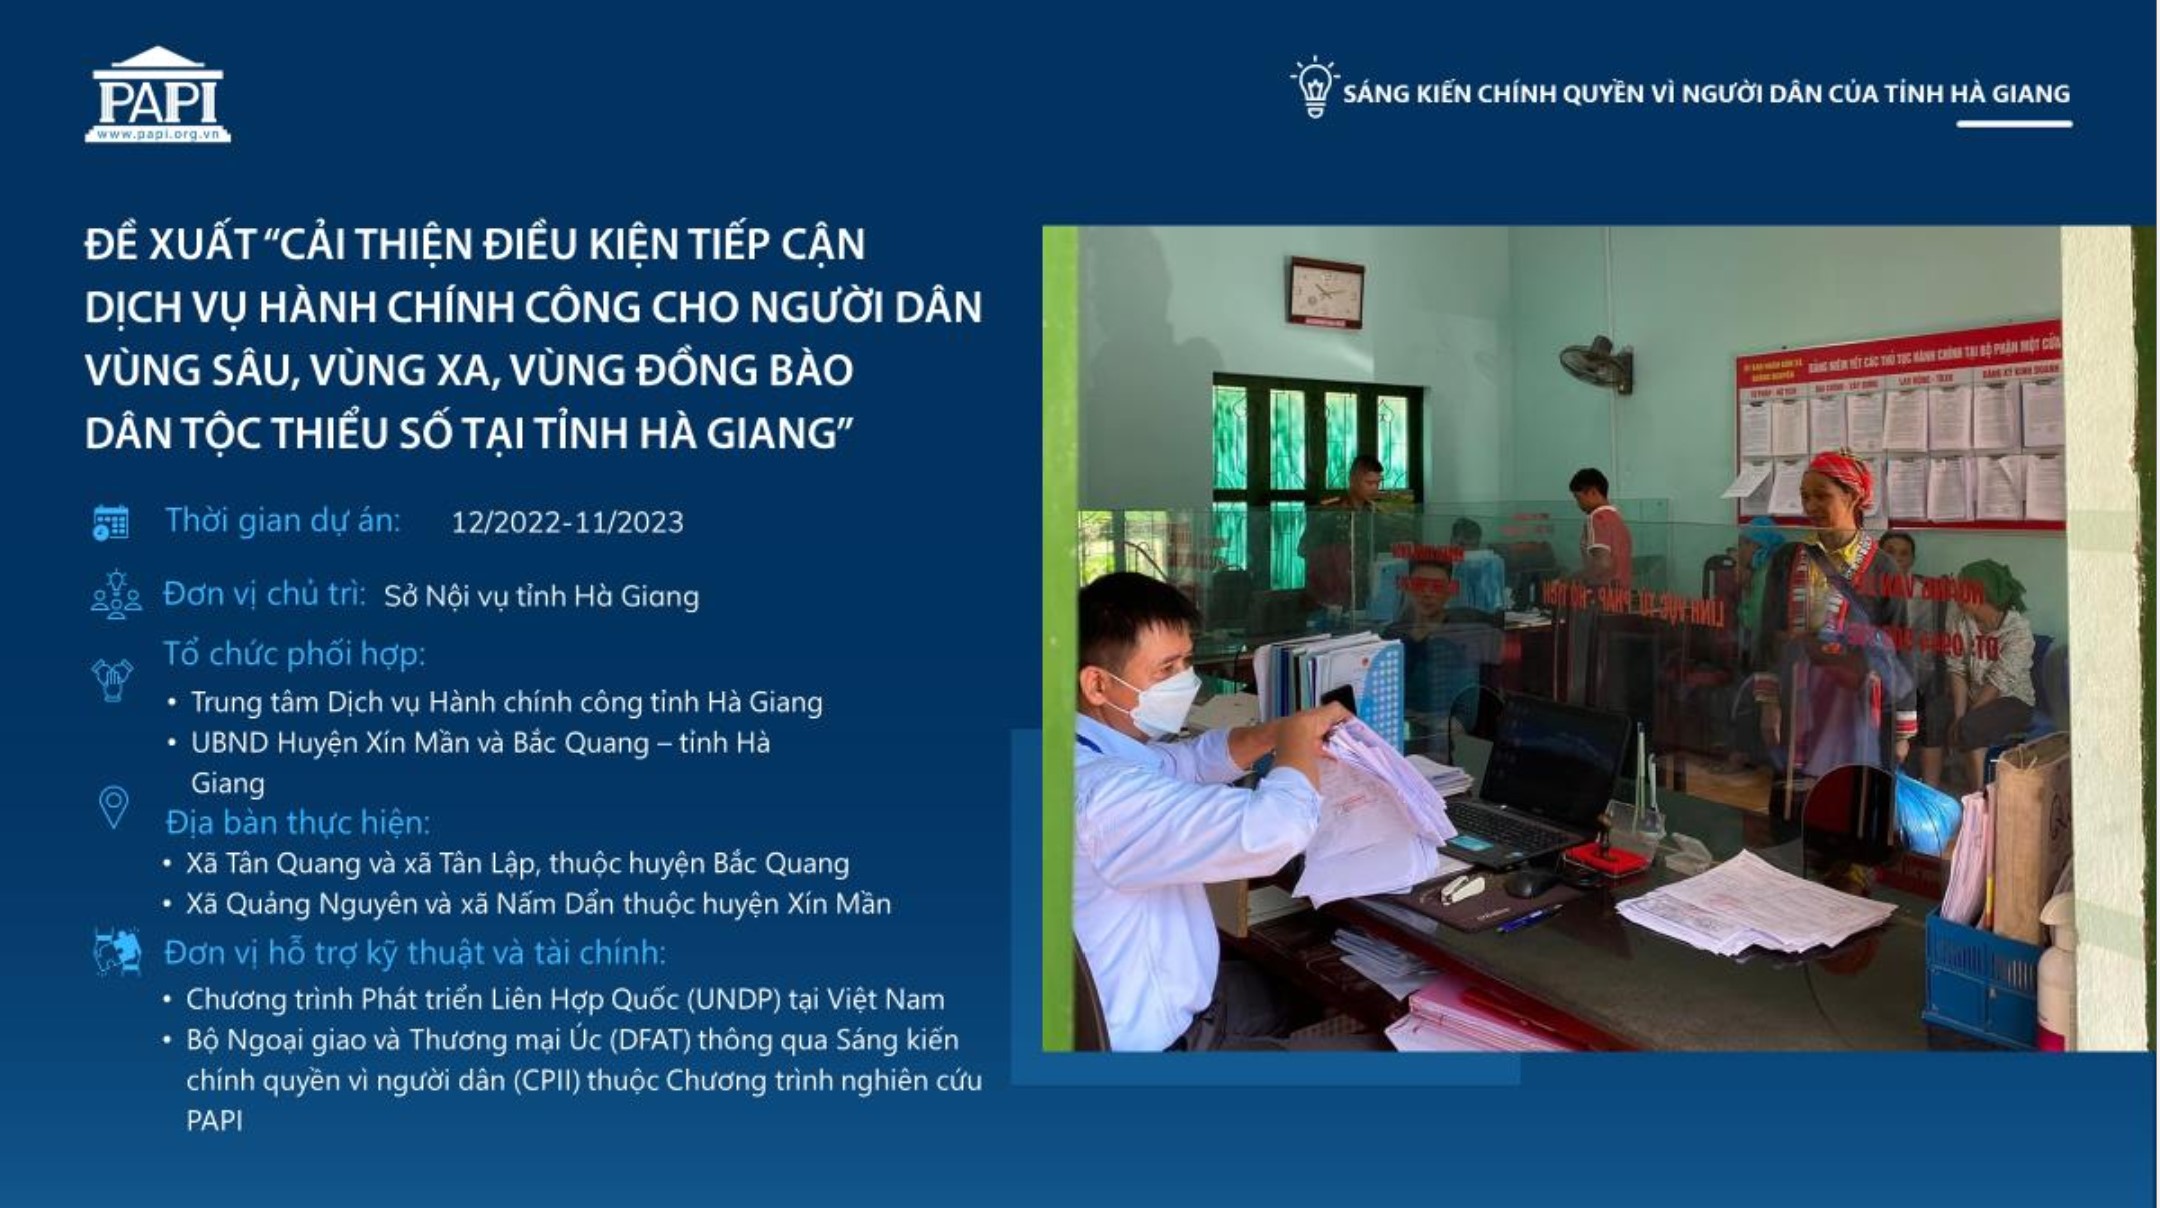 Đề xuất cải thiện điều kiện tiếp cận dịch vụ hành chính công cho người dân vùng sâu, vùng xa, vùng đồng bào dân tộc thiểu số tỉnh Hà Giang